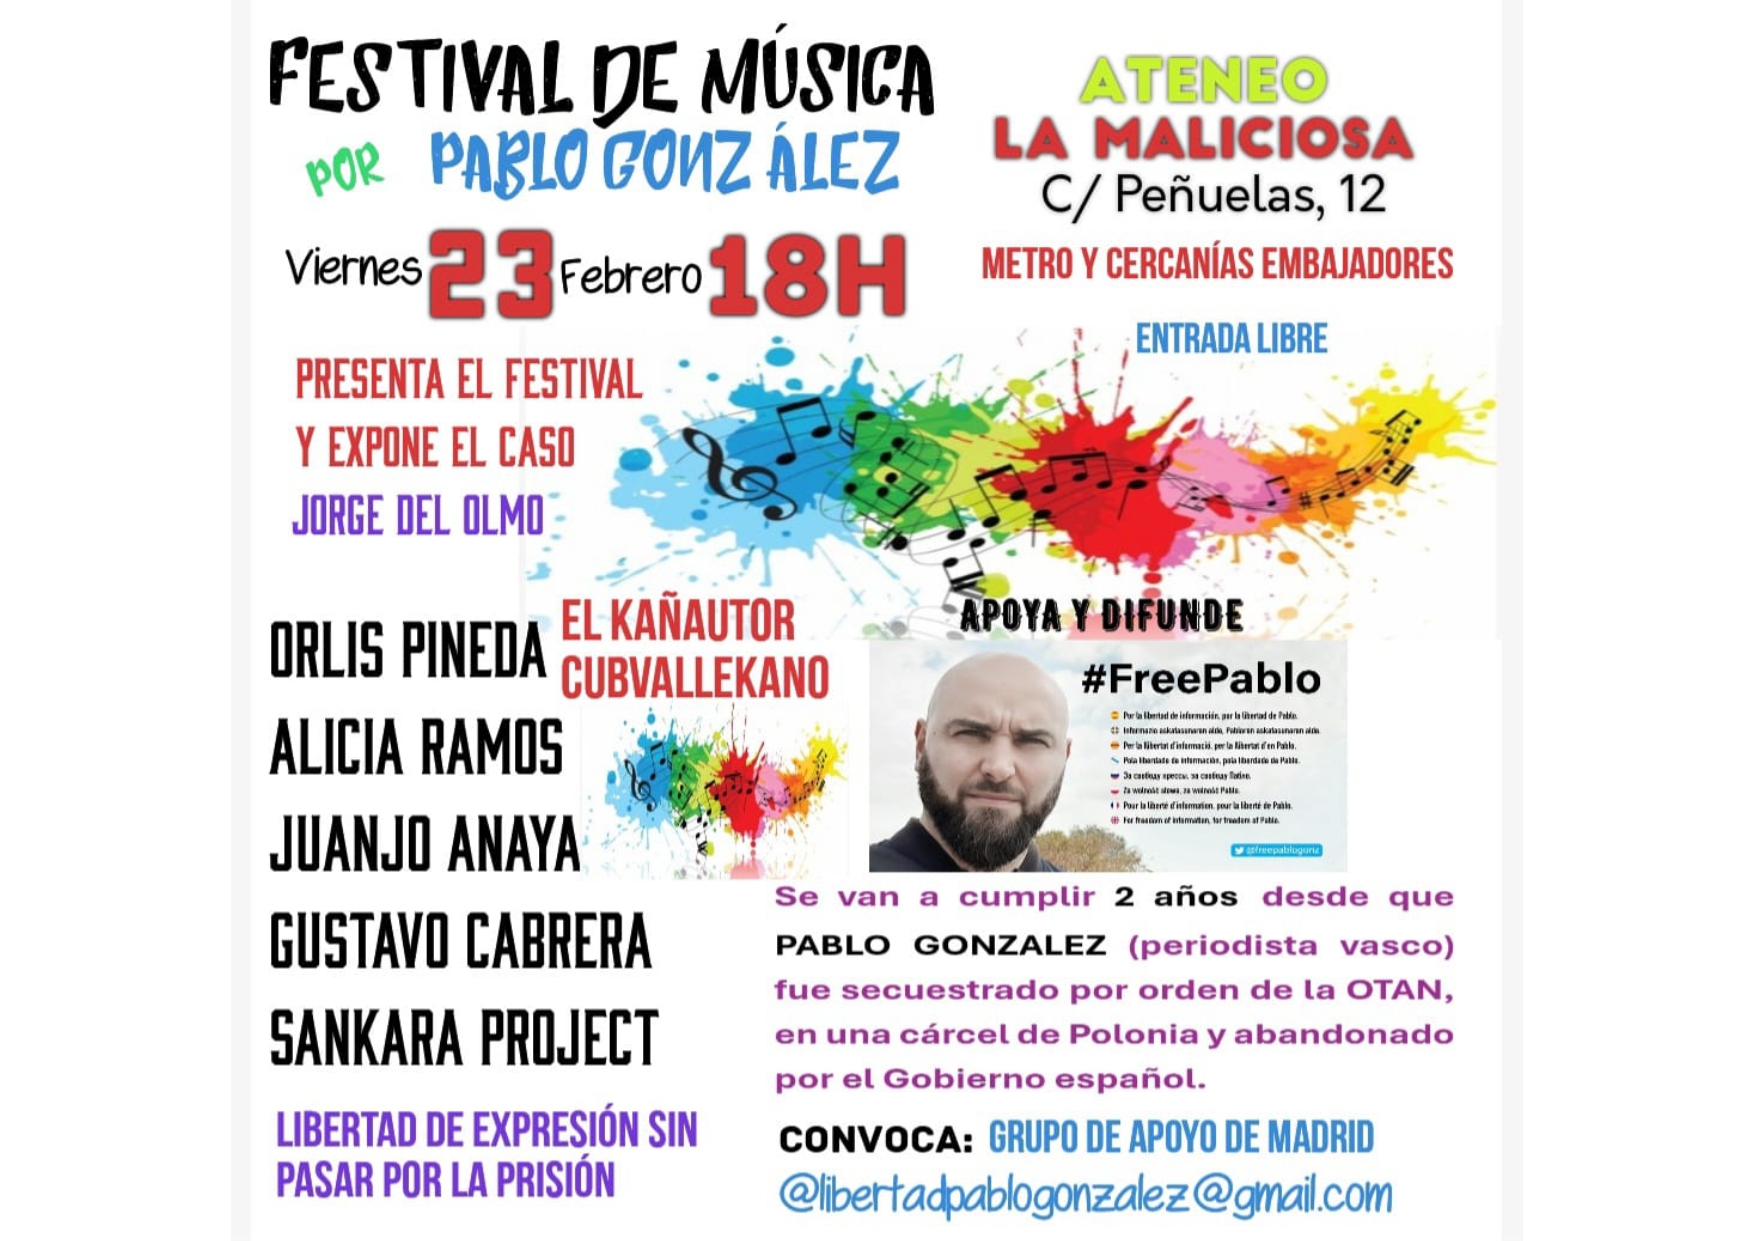 Festival de música por Pablo González